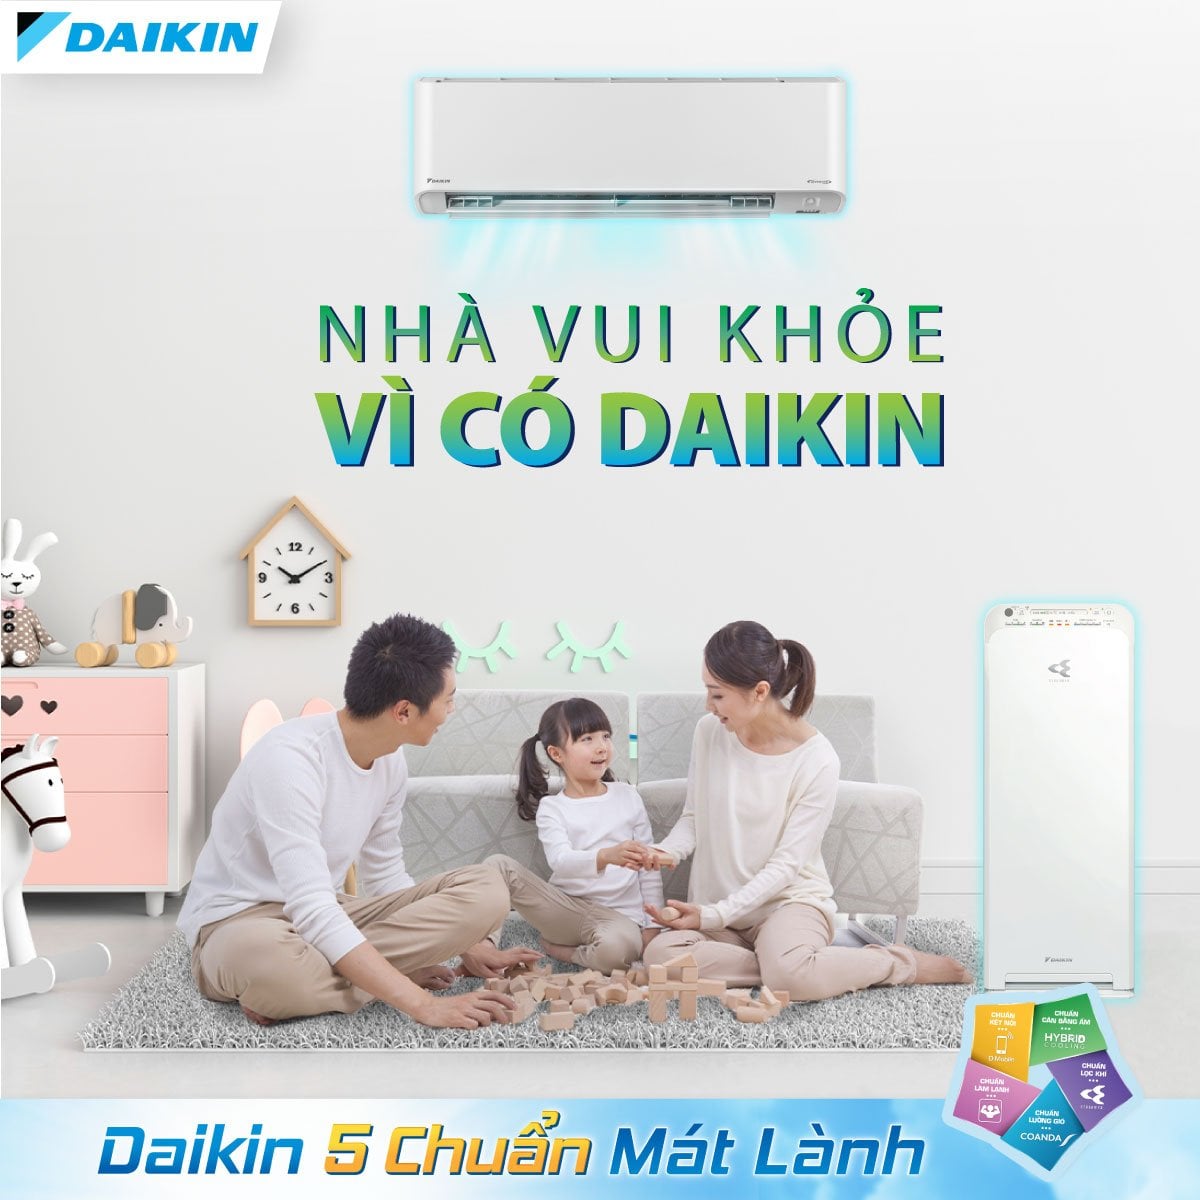 Daikin còn đa dạng các mặt hàng sản phẩm như điều hòa Daikin 1 chiều, điều hòa Daikin 2 chiều.